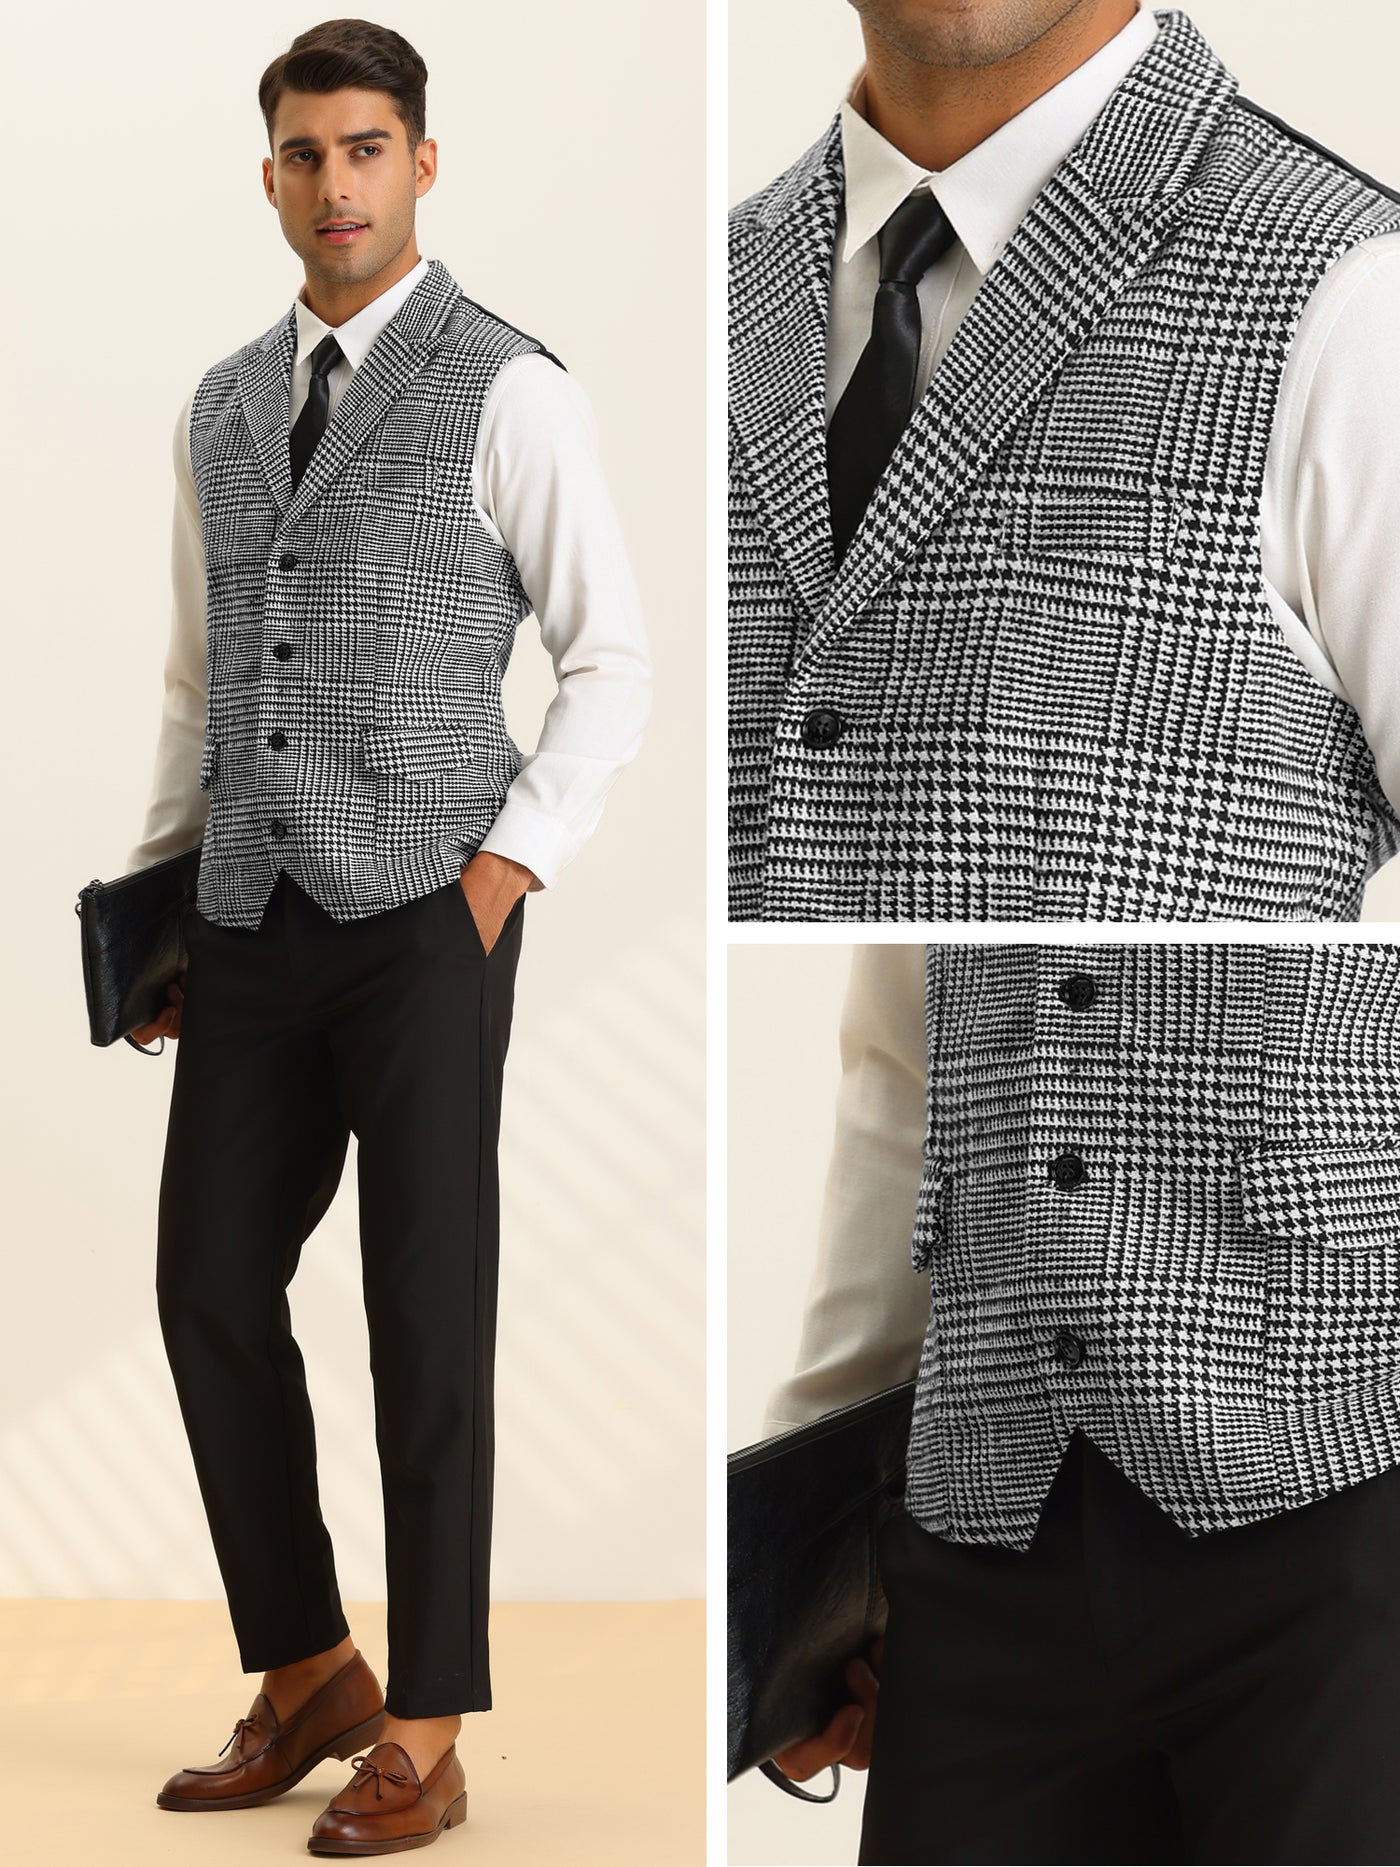 Bublédon Men's Houndstooth Waistcoat Peaked Lapel Formal Plaid Suit Vest